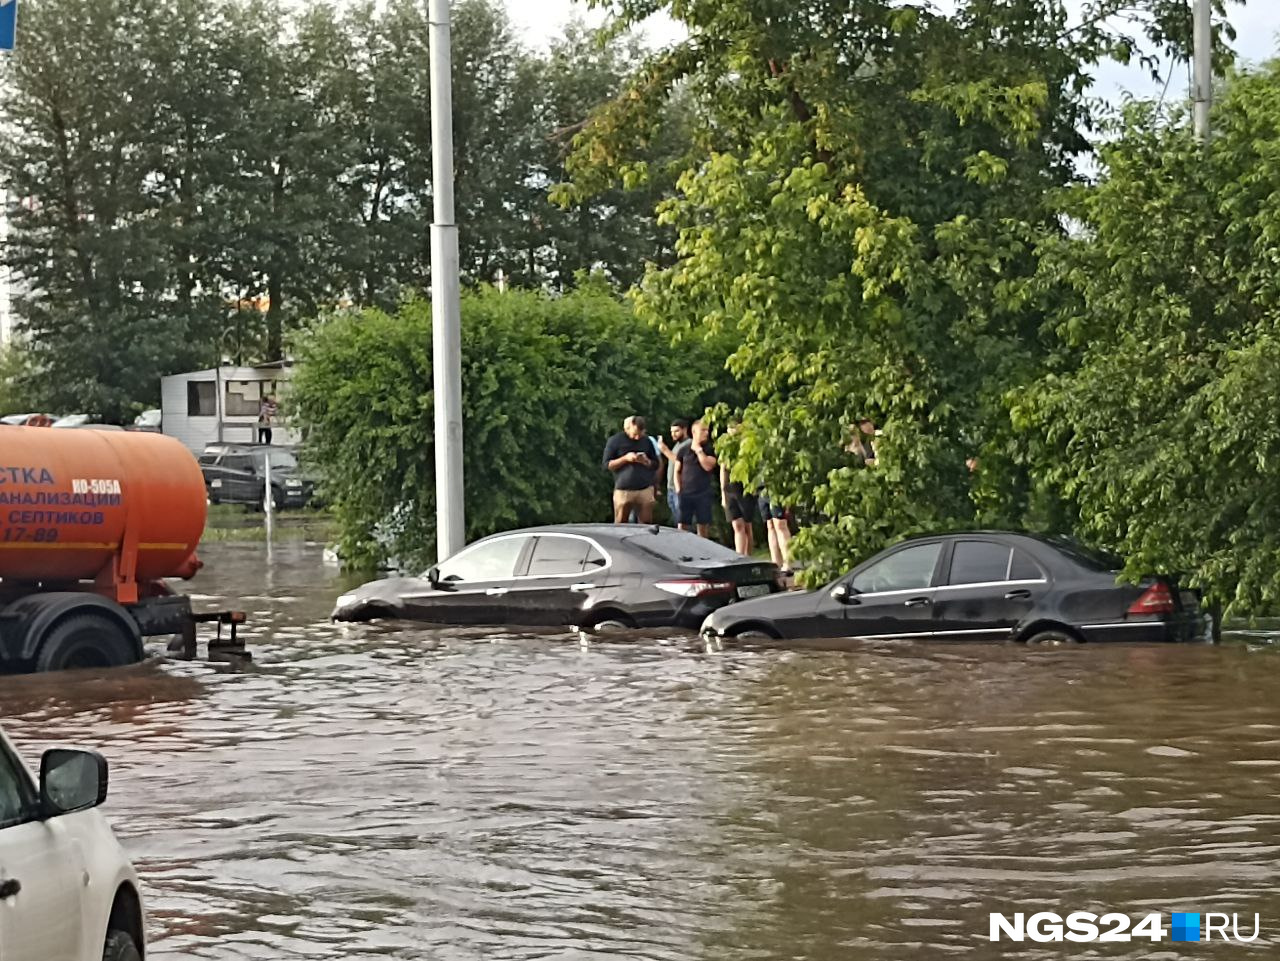 Автомобили наполовину скрыты водой, и это не самый глубокий участок